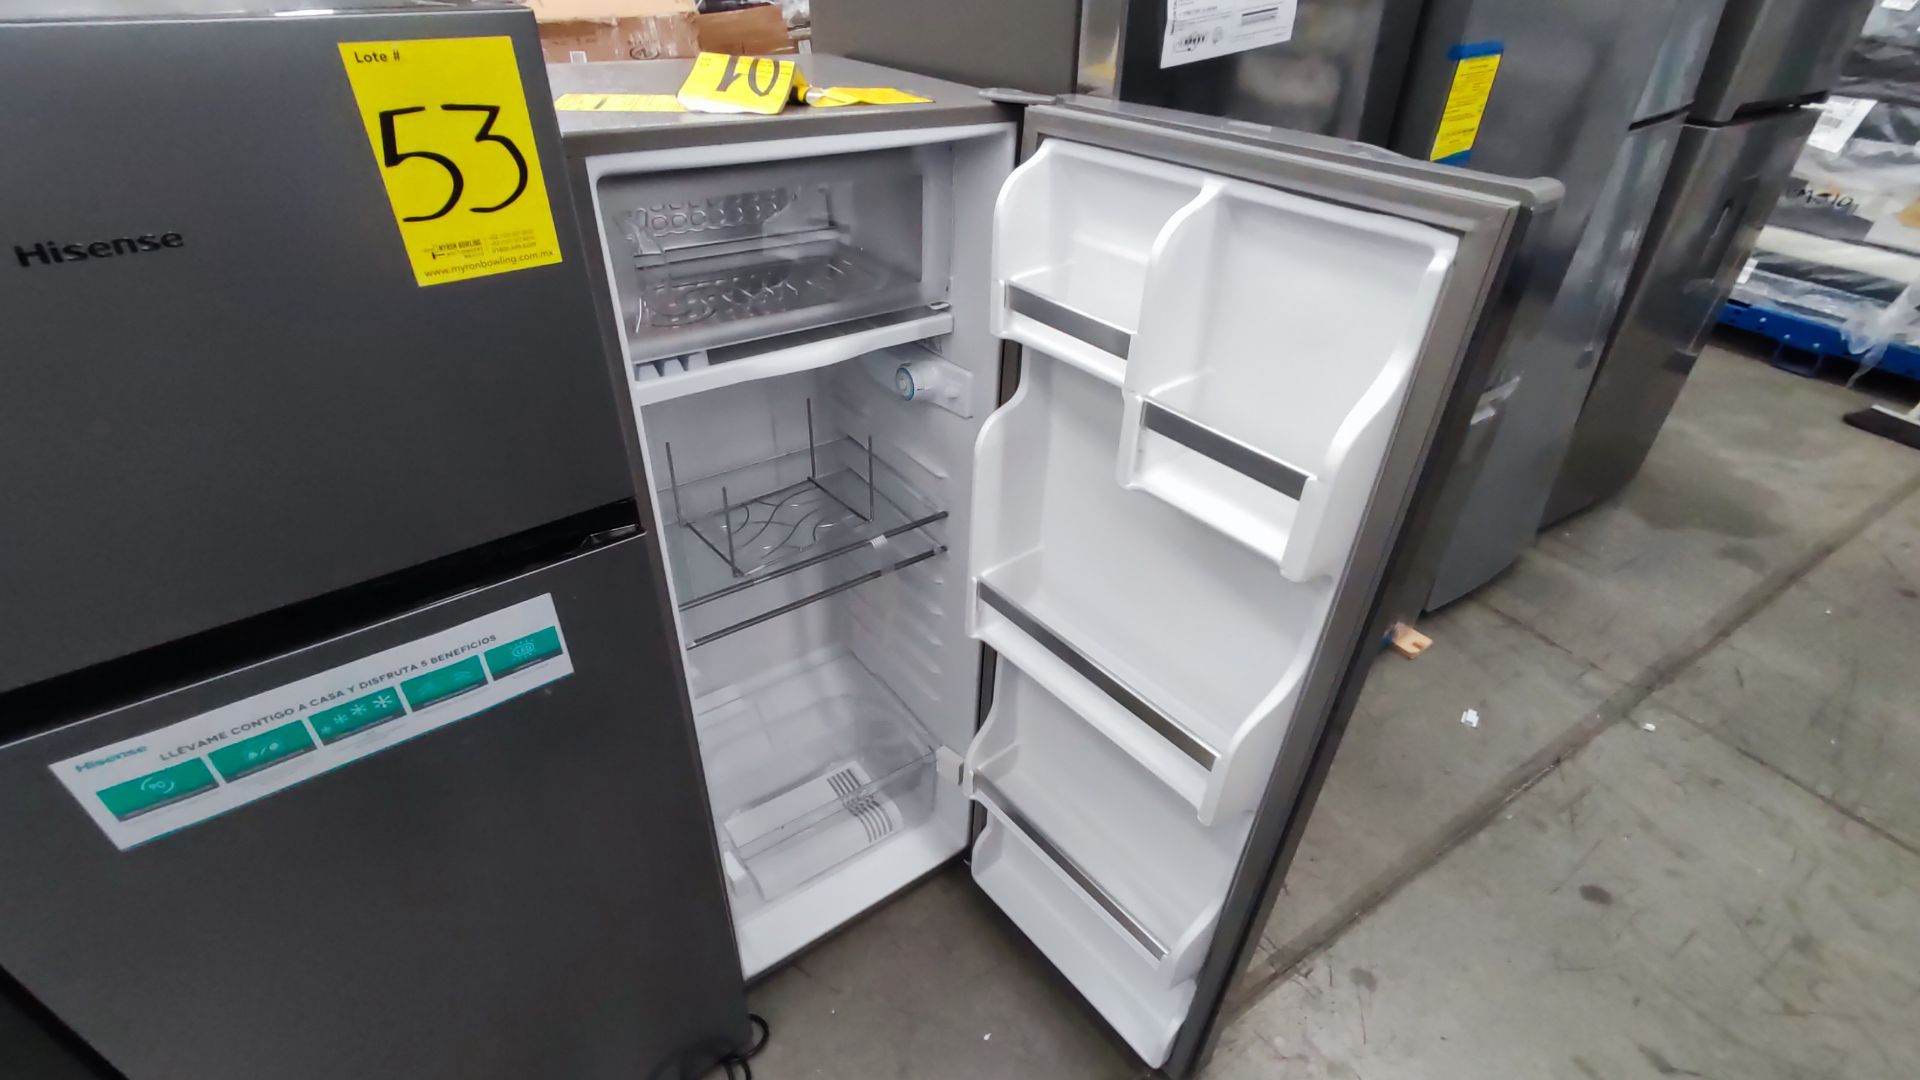 Lote de 2 Refrigeradores, Contiene; 1 Refrigerador Marca Hisense, Modelo BCYNY, Serie 1B0205Z0080JB - Image 9 of 11